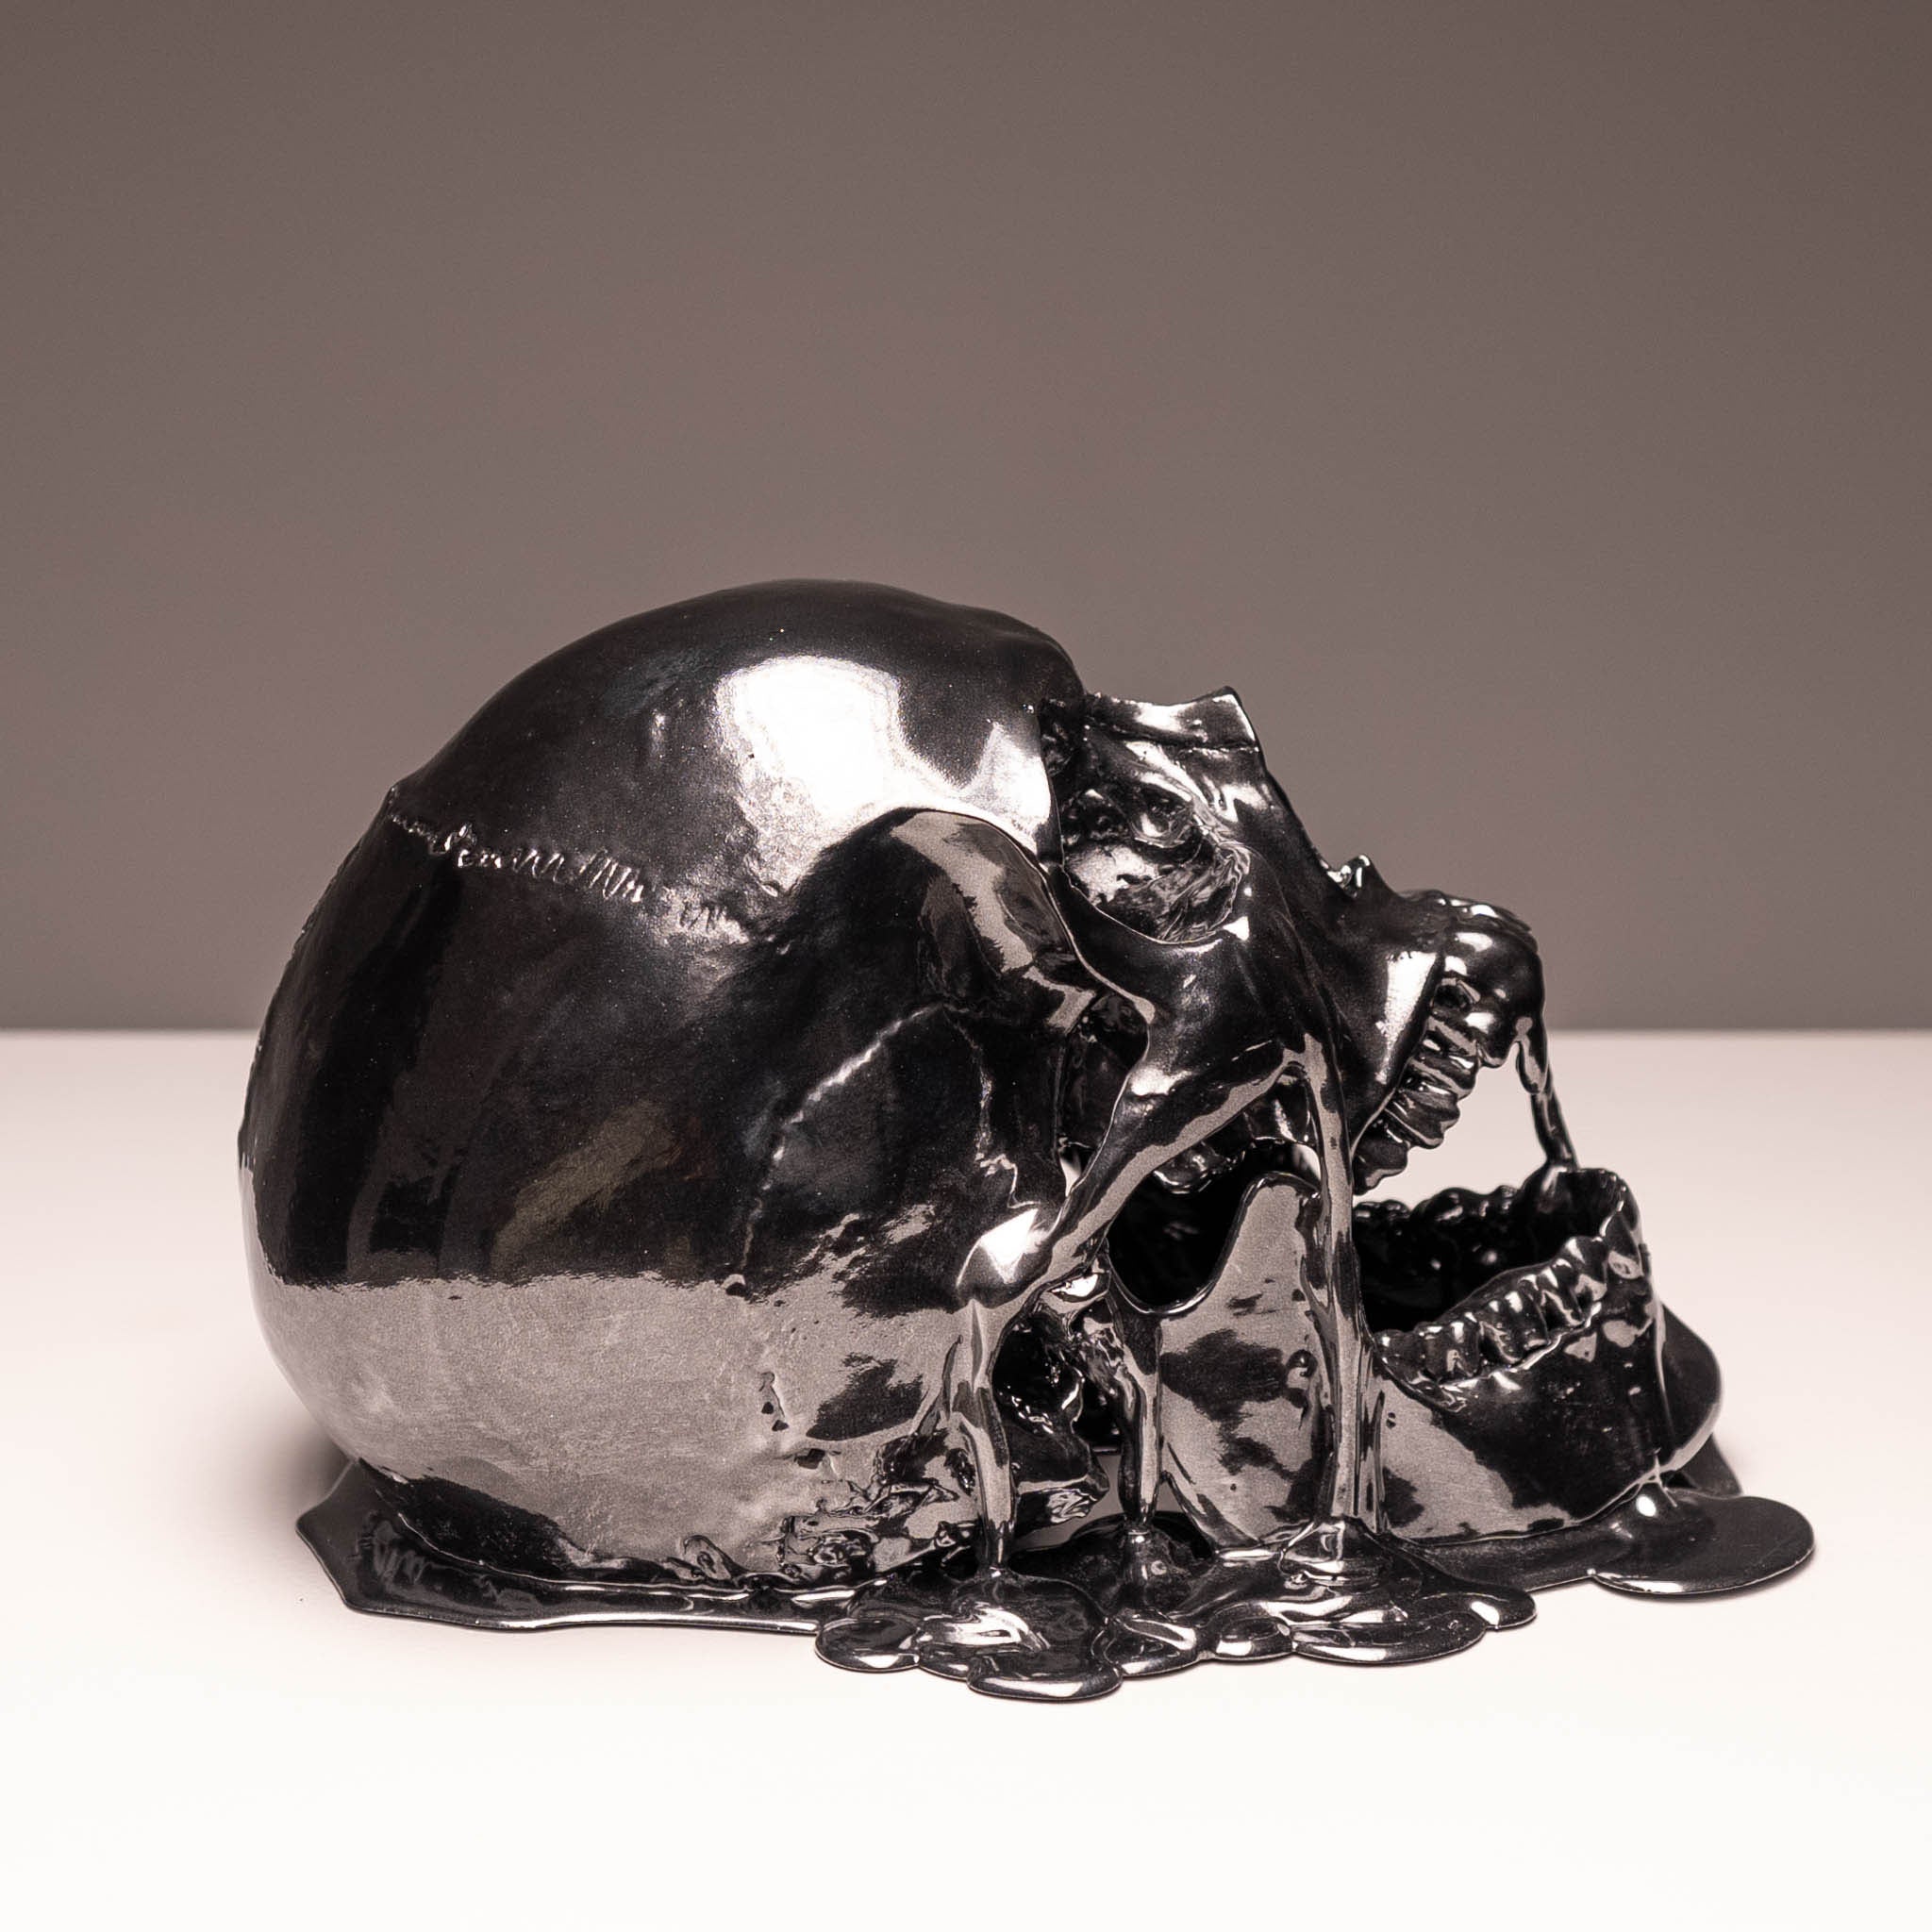 Melting Black Chrome Skull